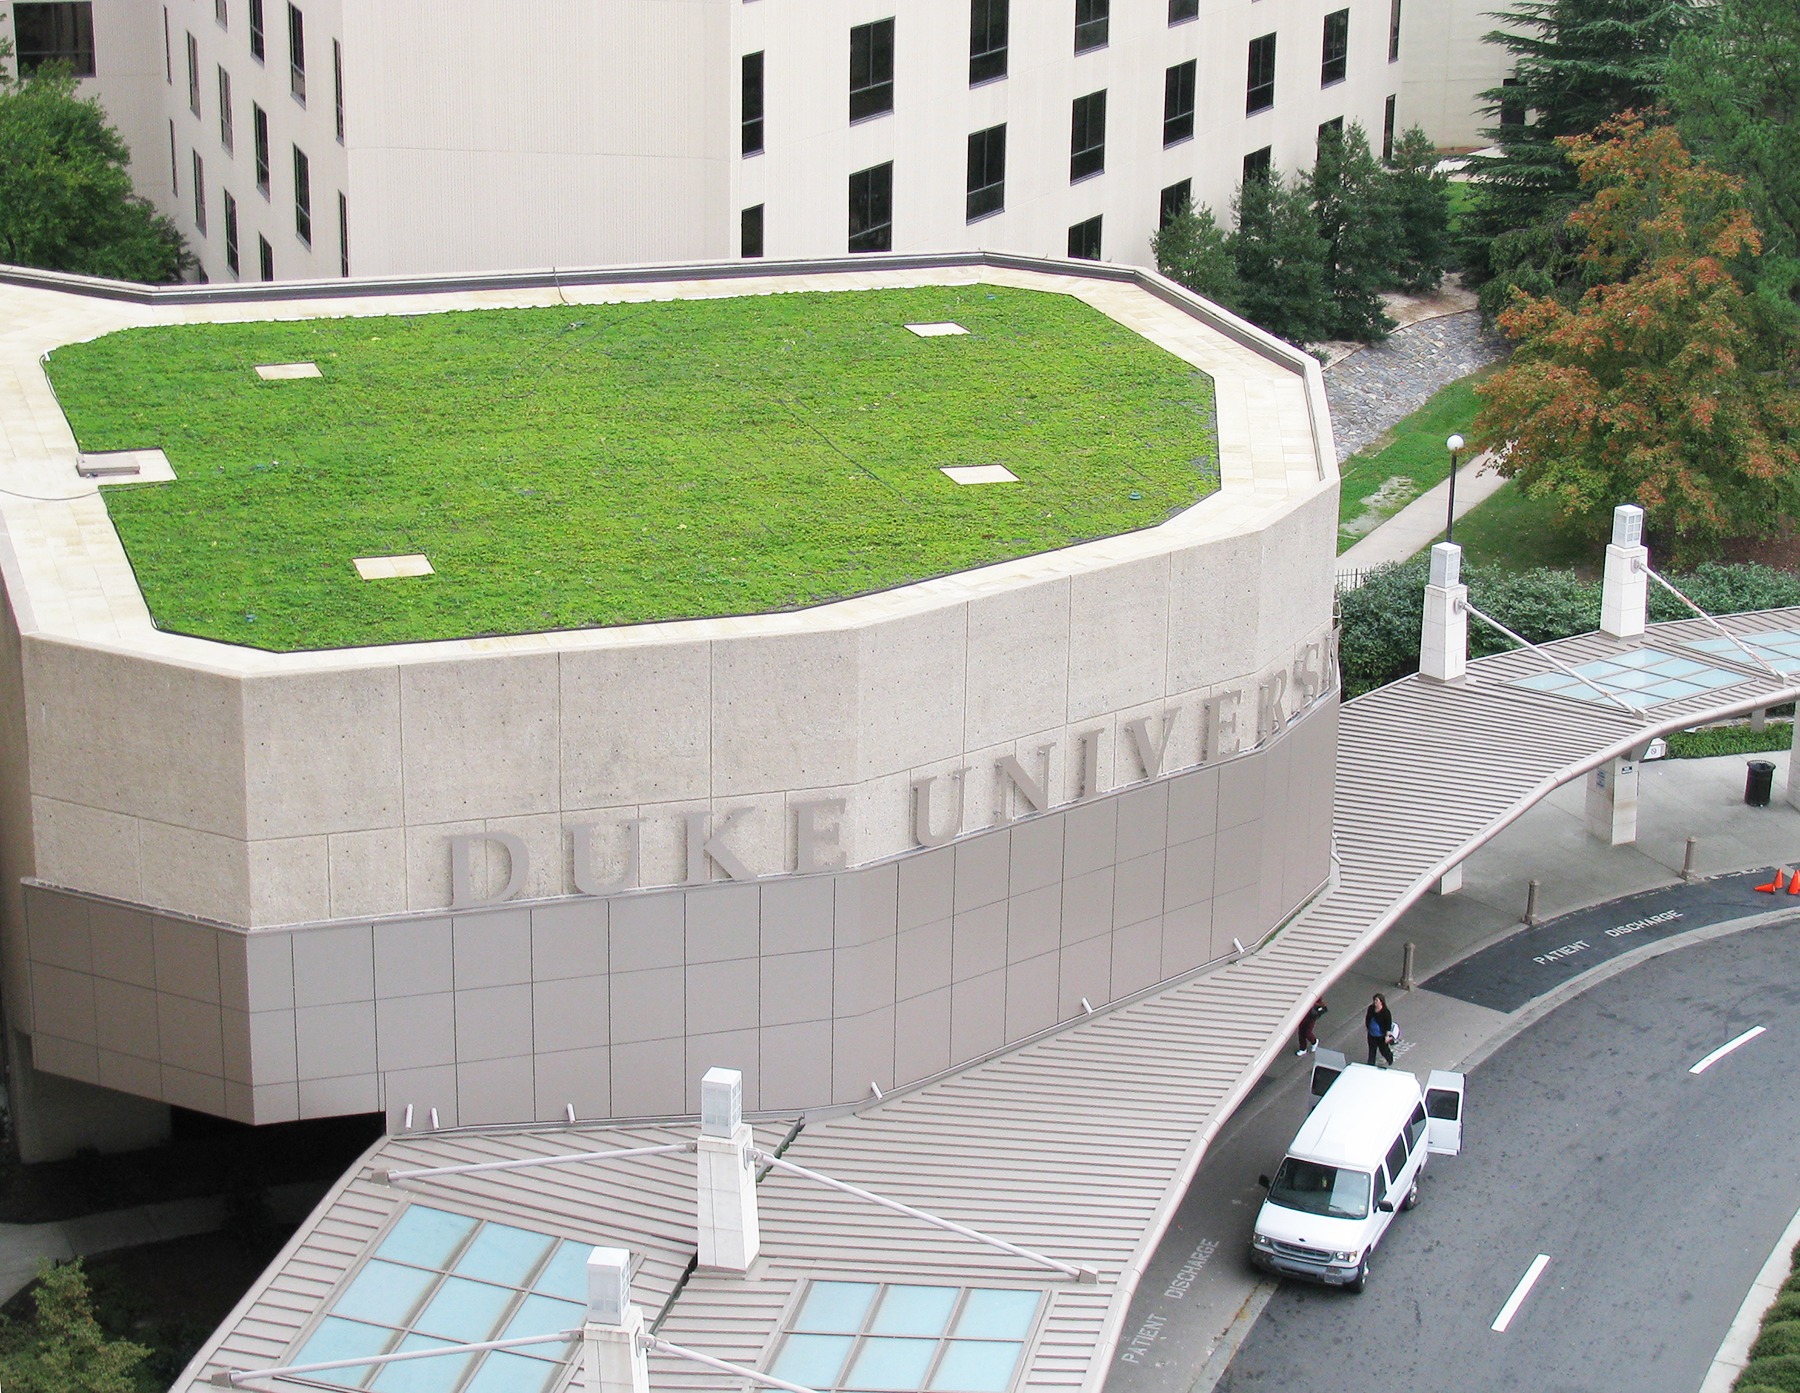 Duke University Hospital's Xero Flor Green Roof